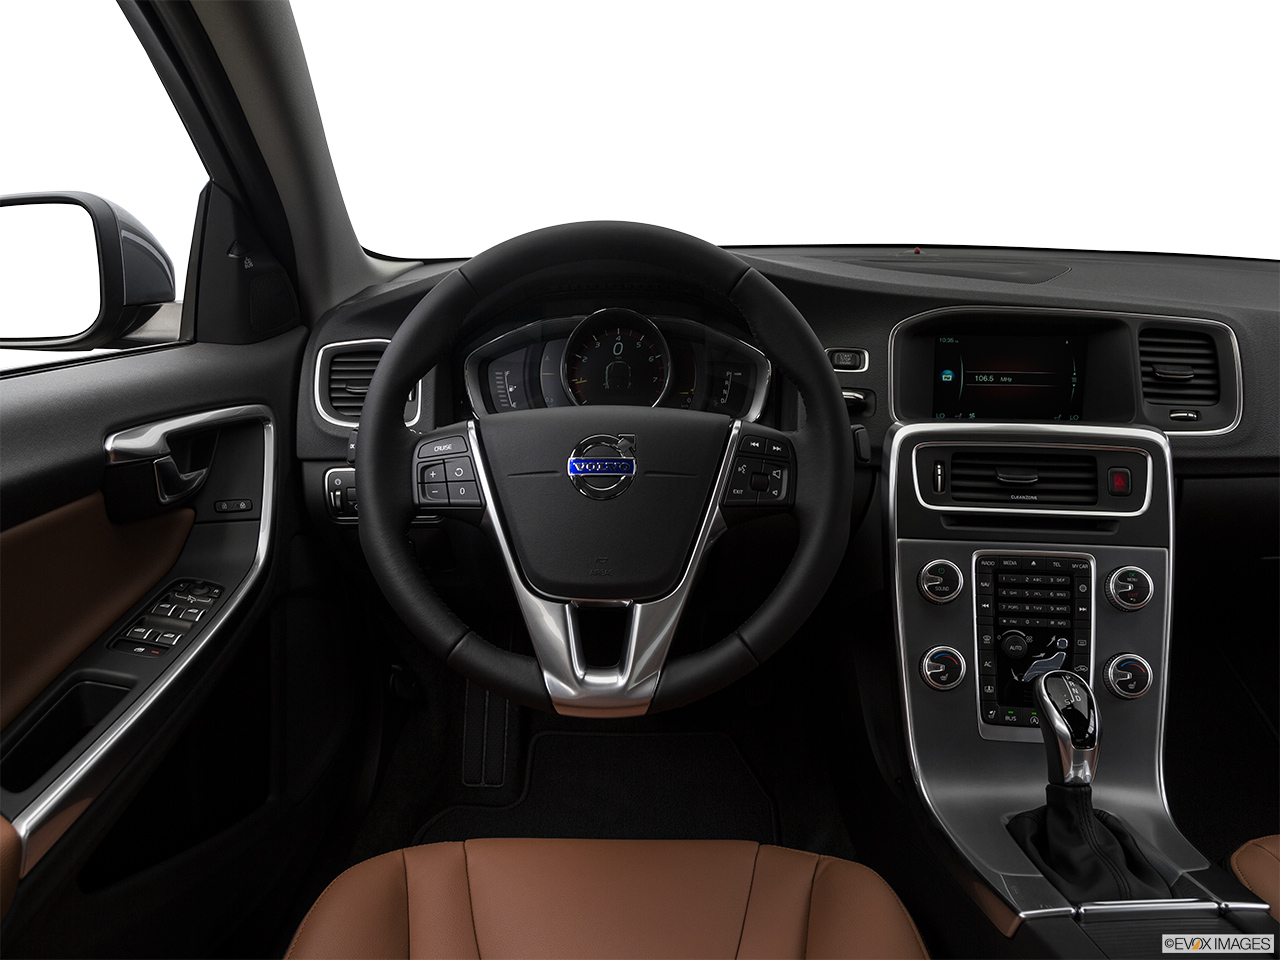 2018 Volvo S60 T5 Inscription Steering wheel/Center Console. 